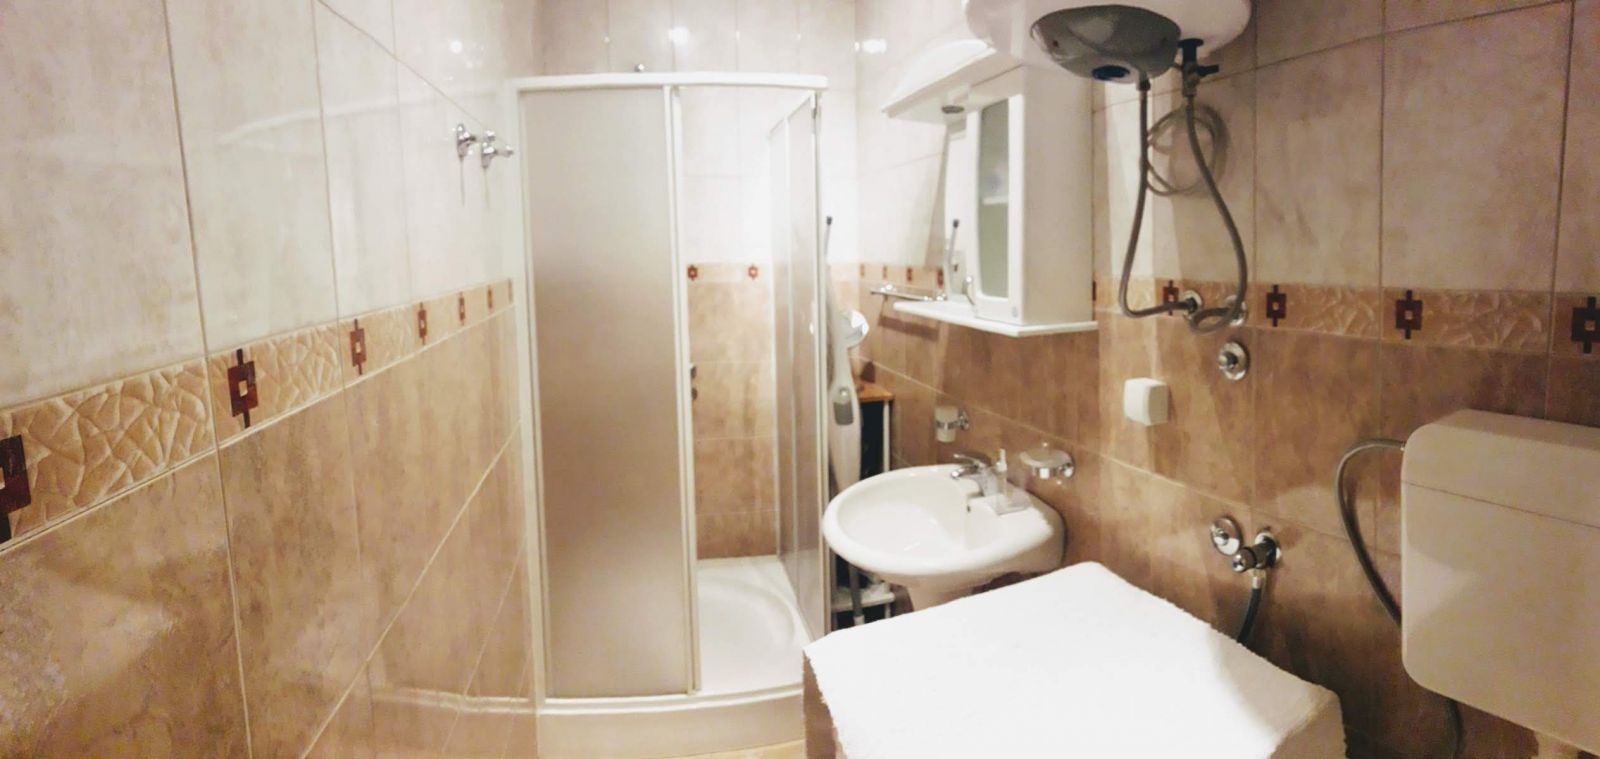 Kotor, Montenegro, bathroom wide shot